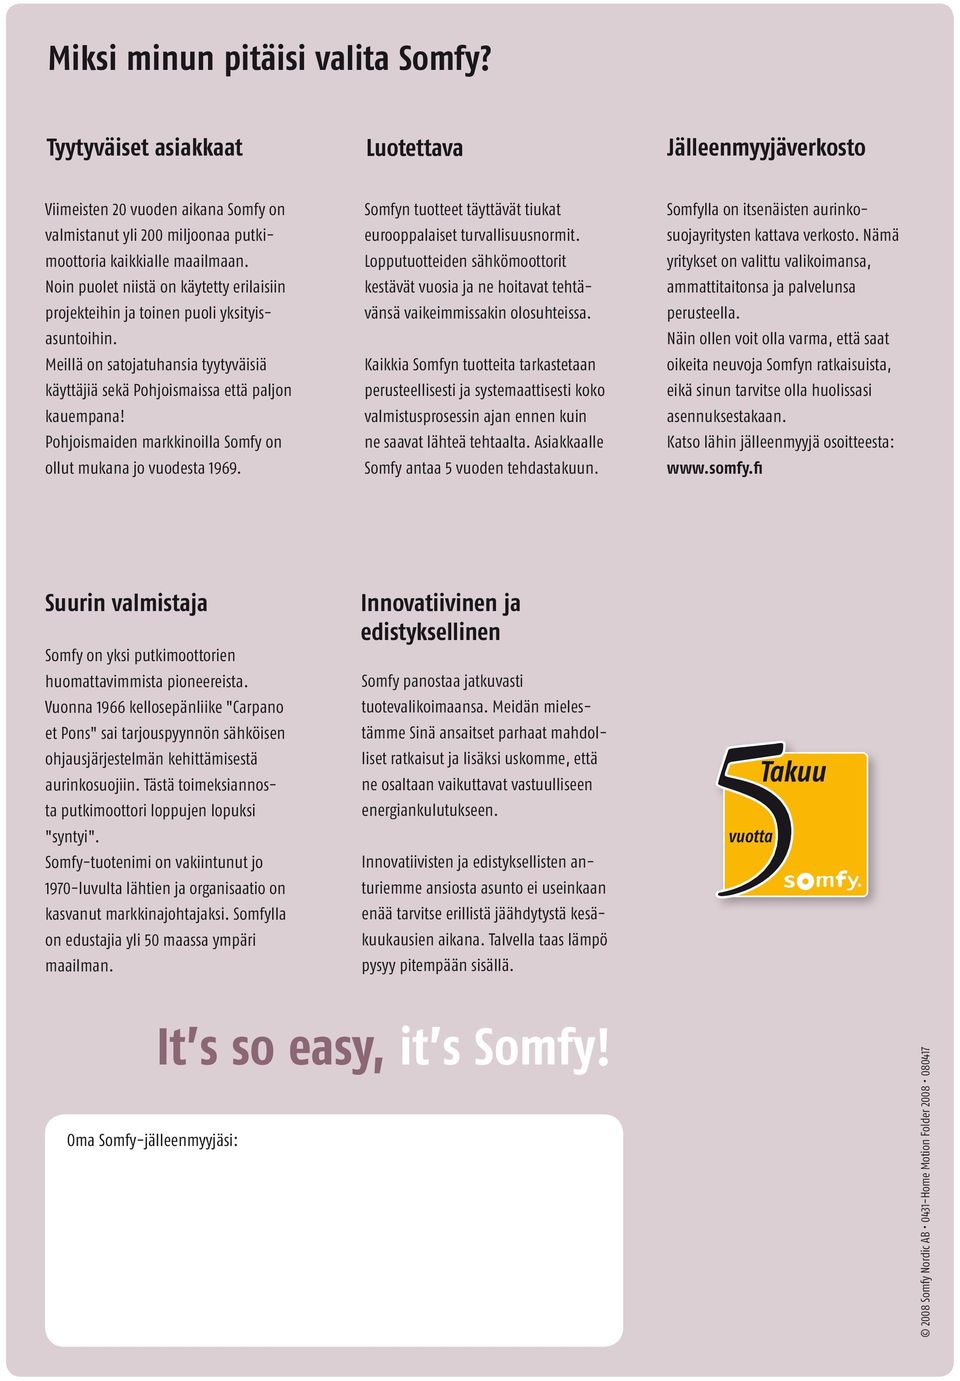 Pohjoismaiden markkinoilla Somfy on ollut mukana jo vuodesta 1969. Somfyn tuotteet täyttävät tiukat eurooppalaiset turvallisuusnormit.